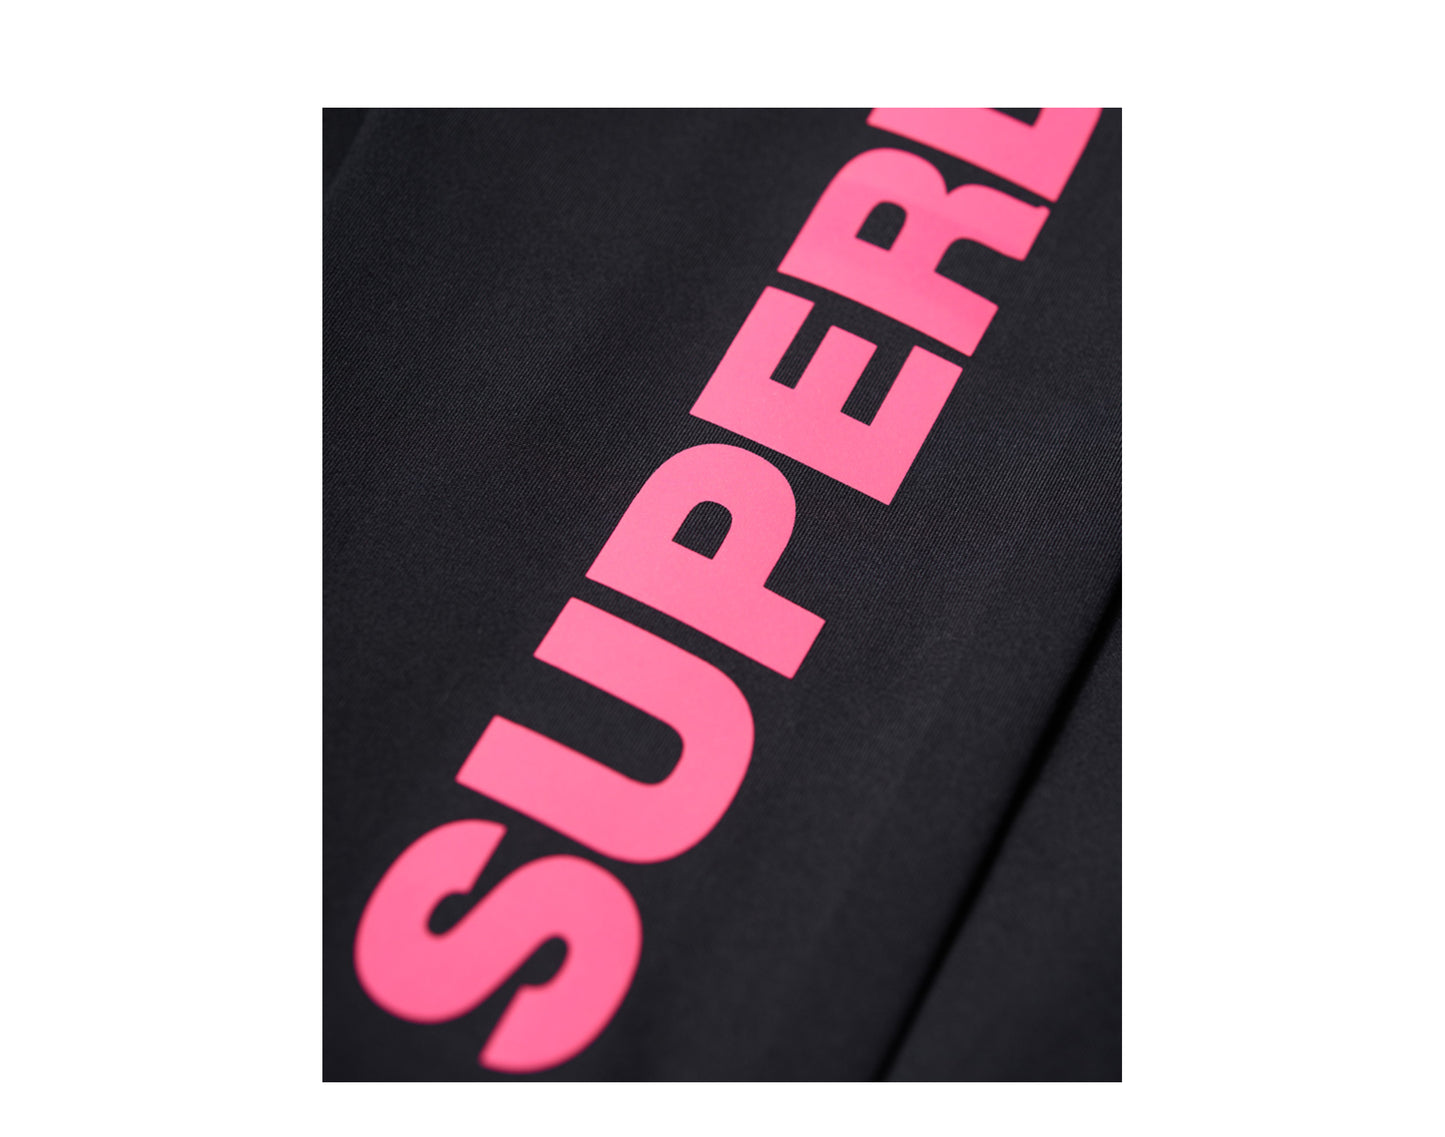 Superdry Core Essential Black/Pink Women's Leggings GS30030AR-BLCK